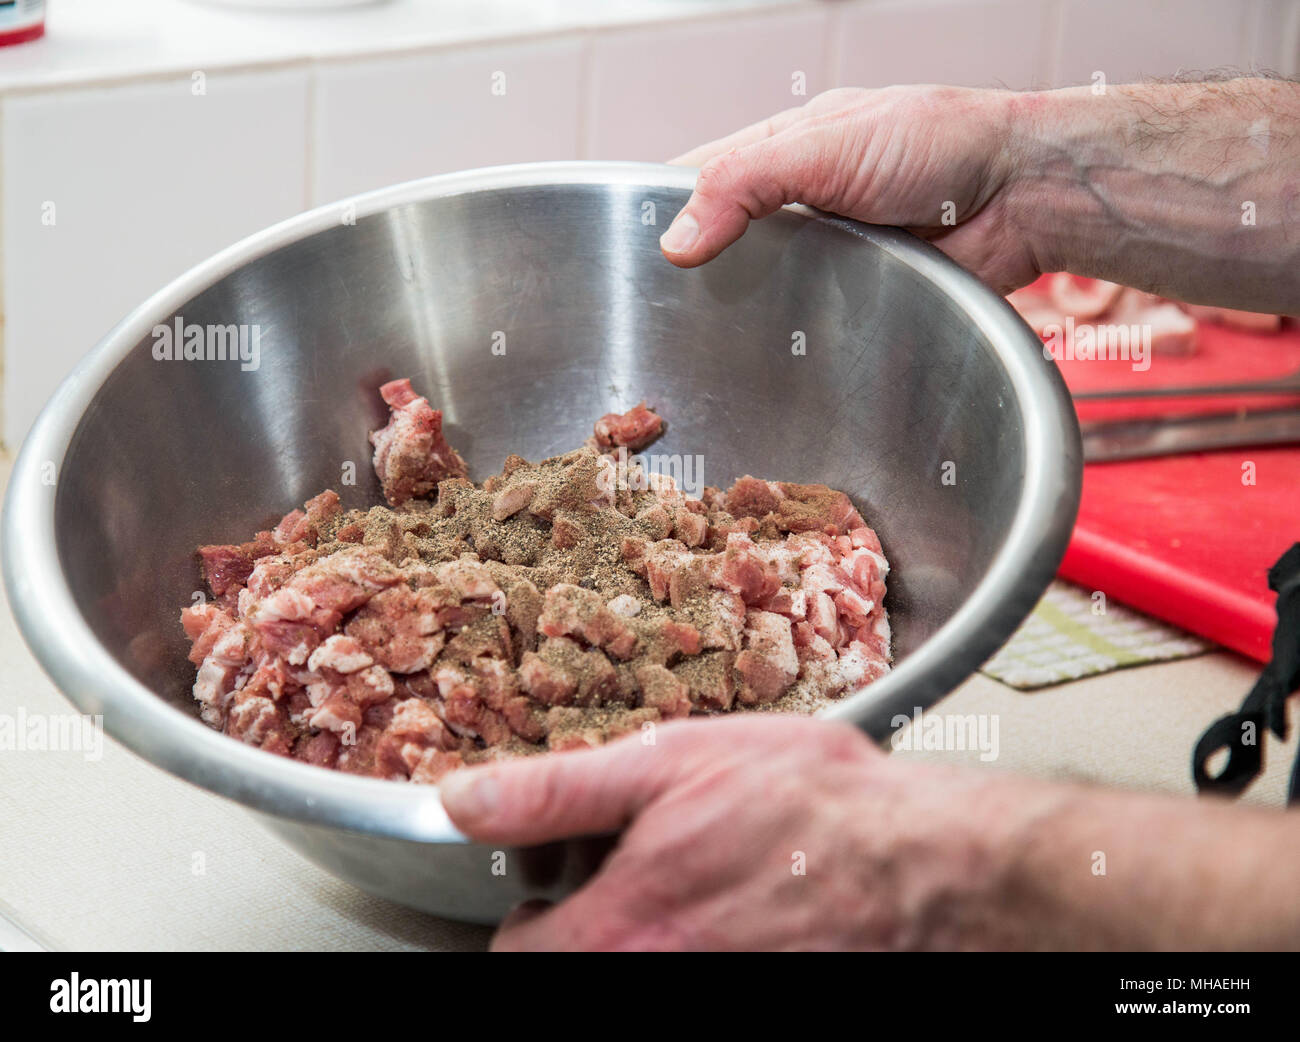 Making Artisan pork pies Stock Photo